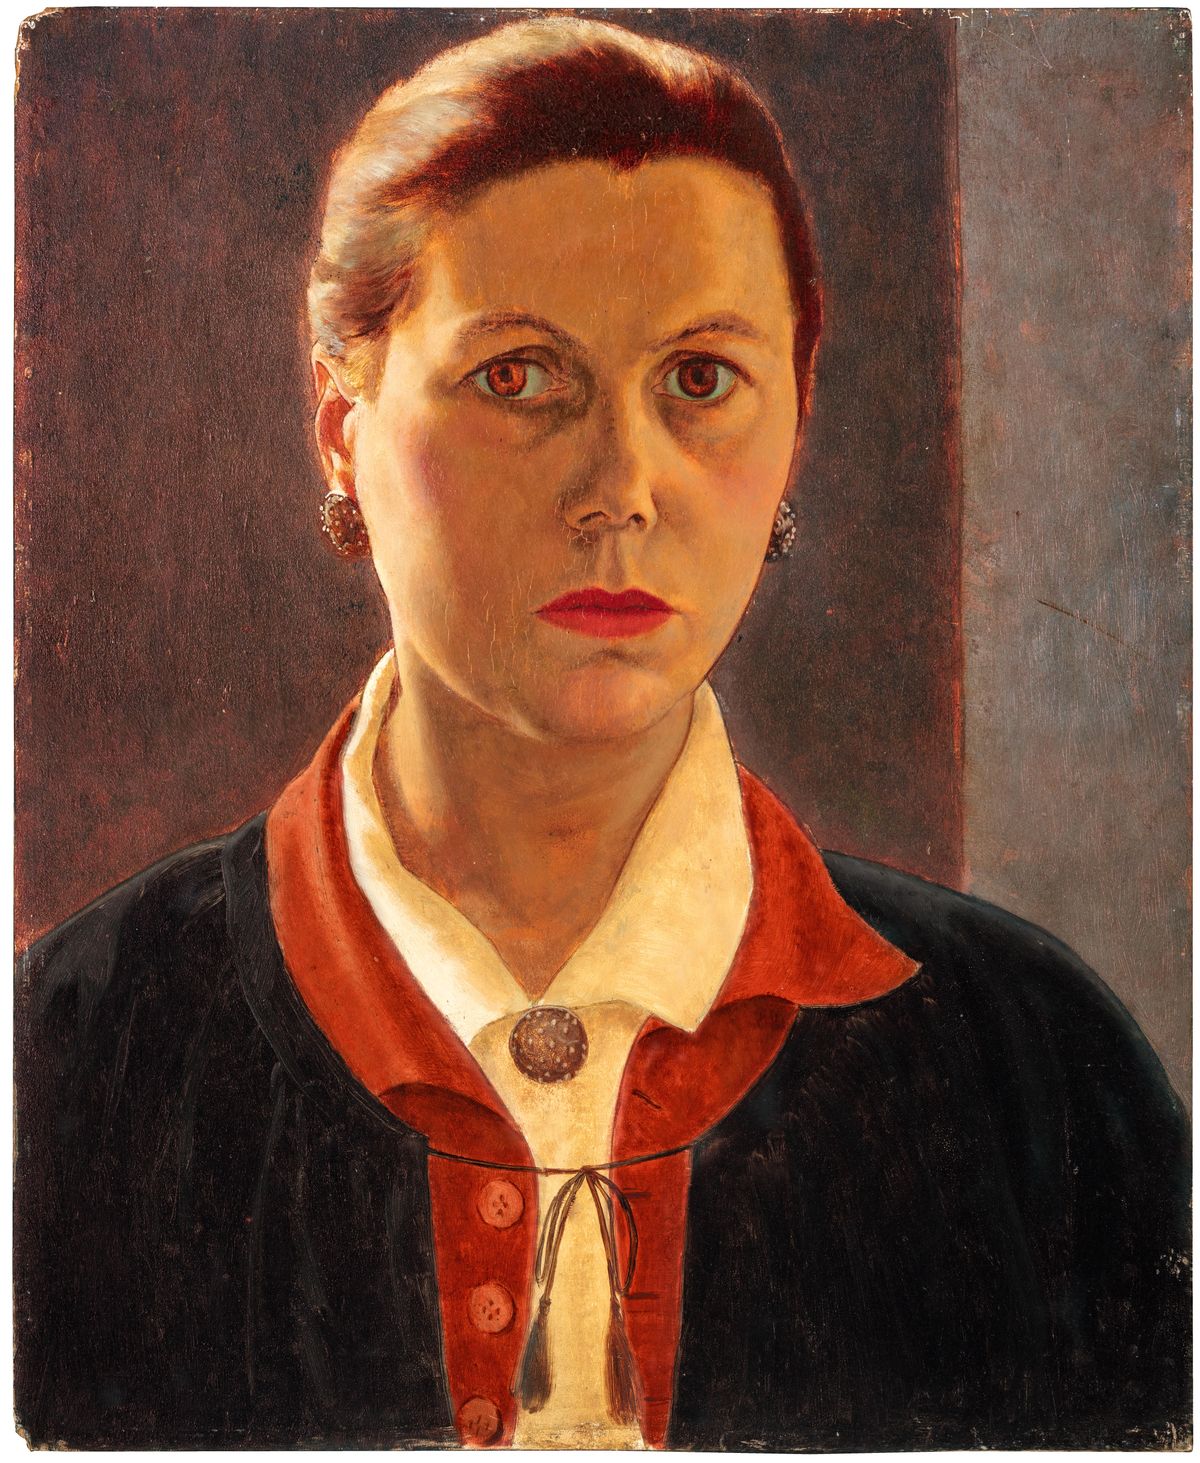 Στέλλα Μπόουεν - 16 Μαΐου 1893 - 30 Οκτωβρίου 1947